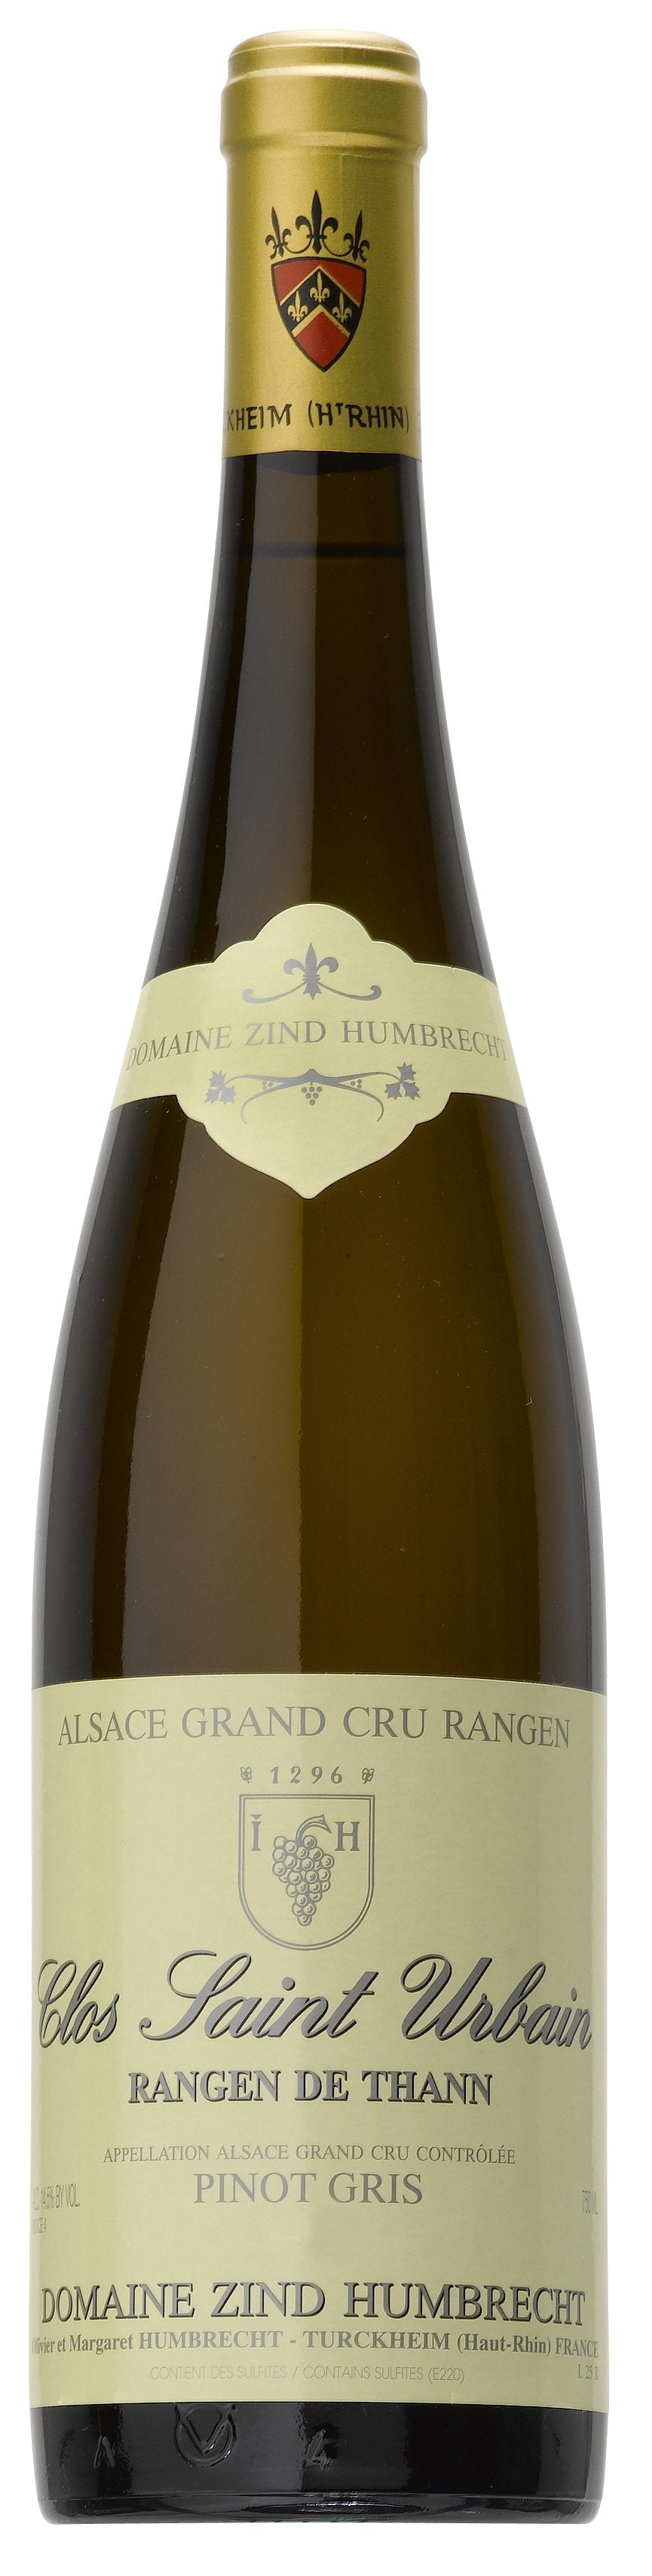 Zind-Humbrecht Pinot Gris Rangen de Thann Clos St. Urbain 2016